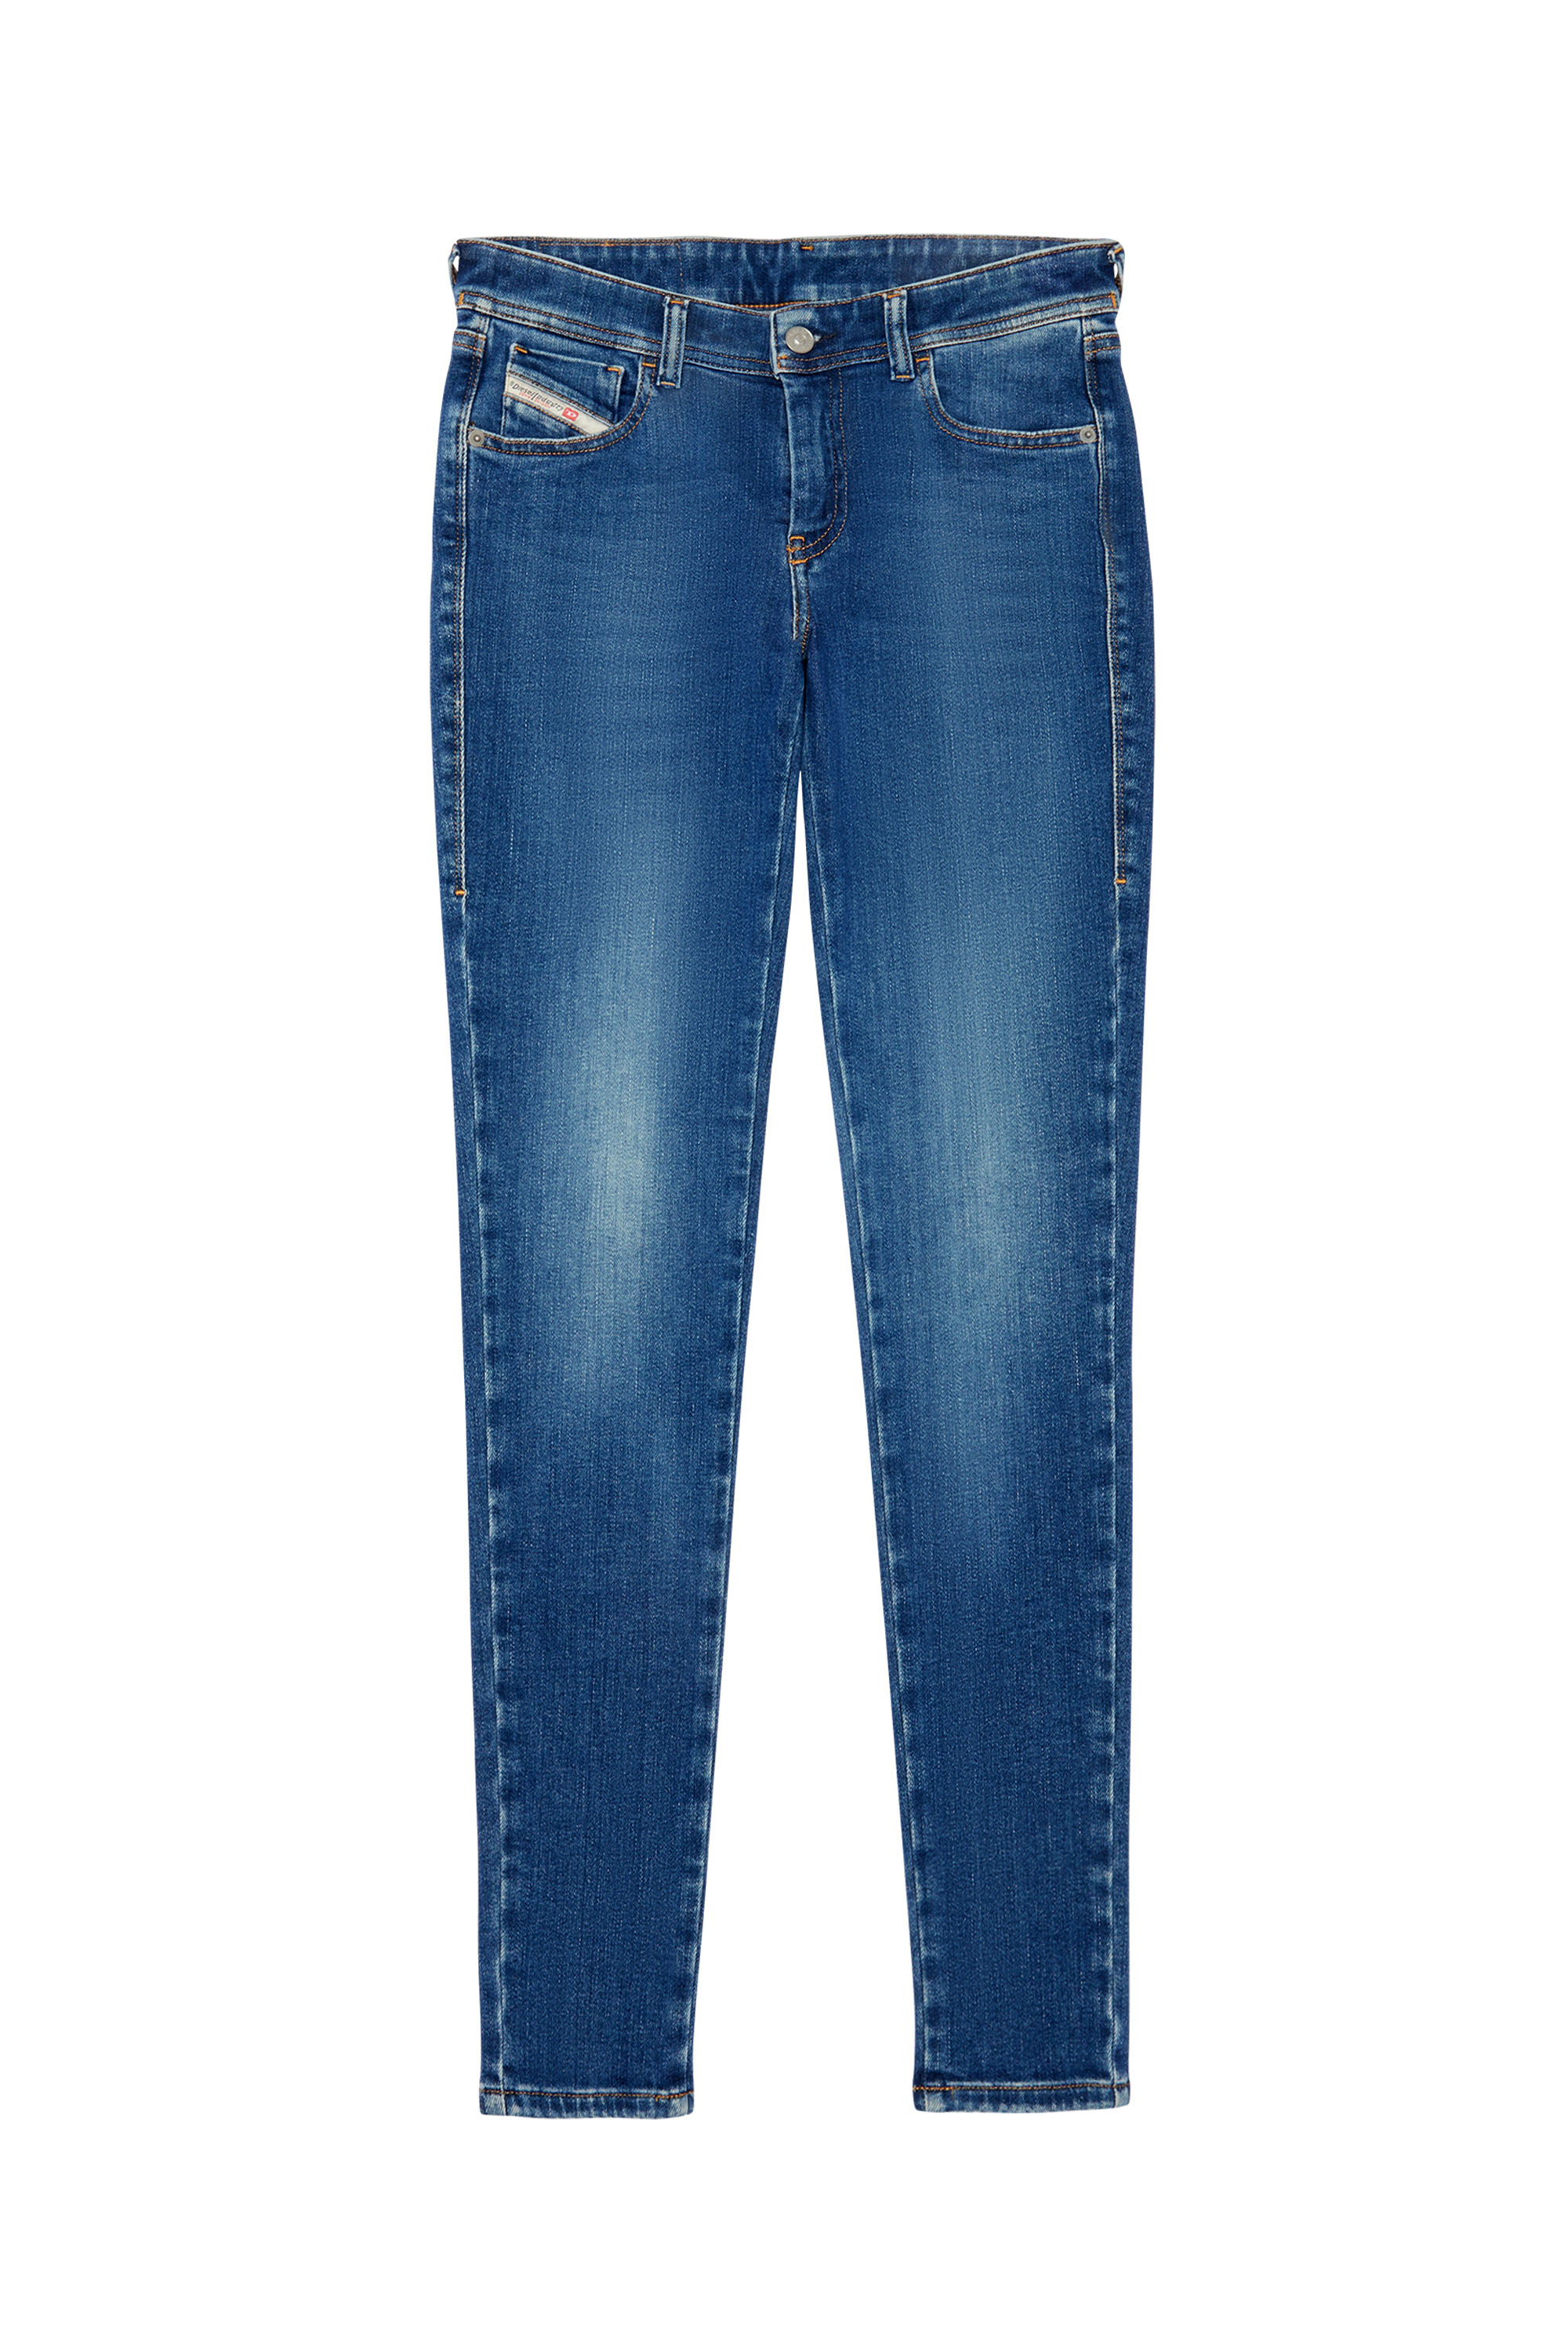 Super skinny Jeans 2018 Slandy-Low 09C21, Bleu moyen - Jeans